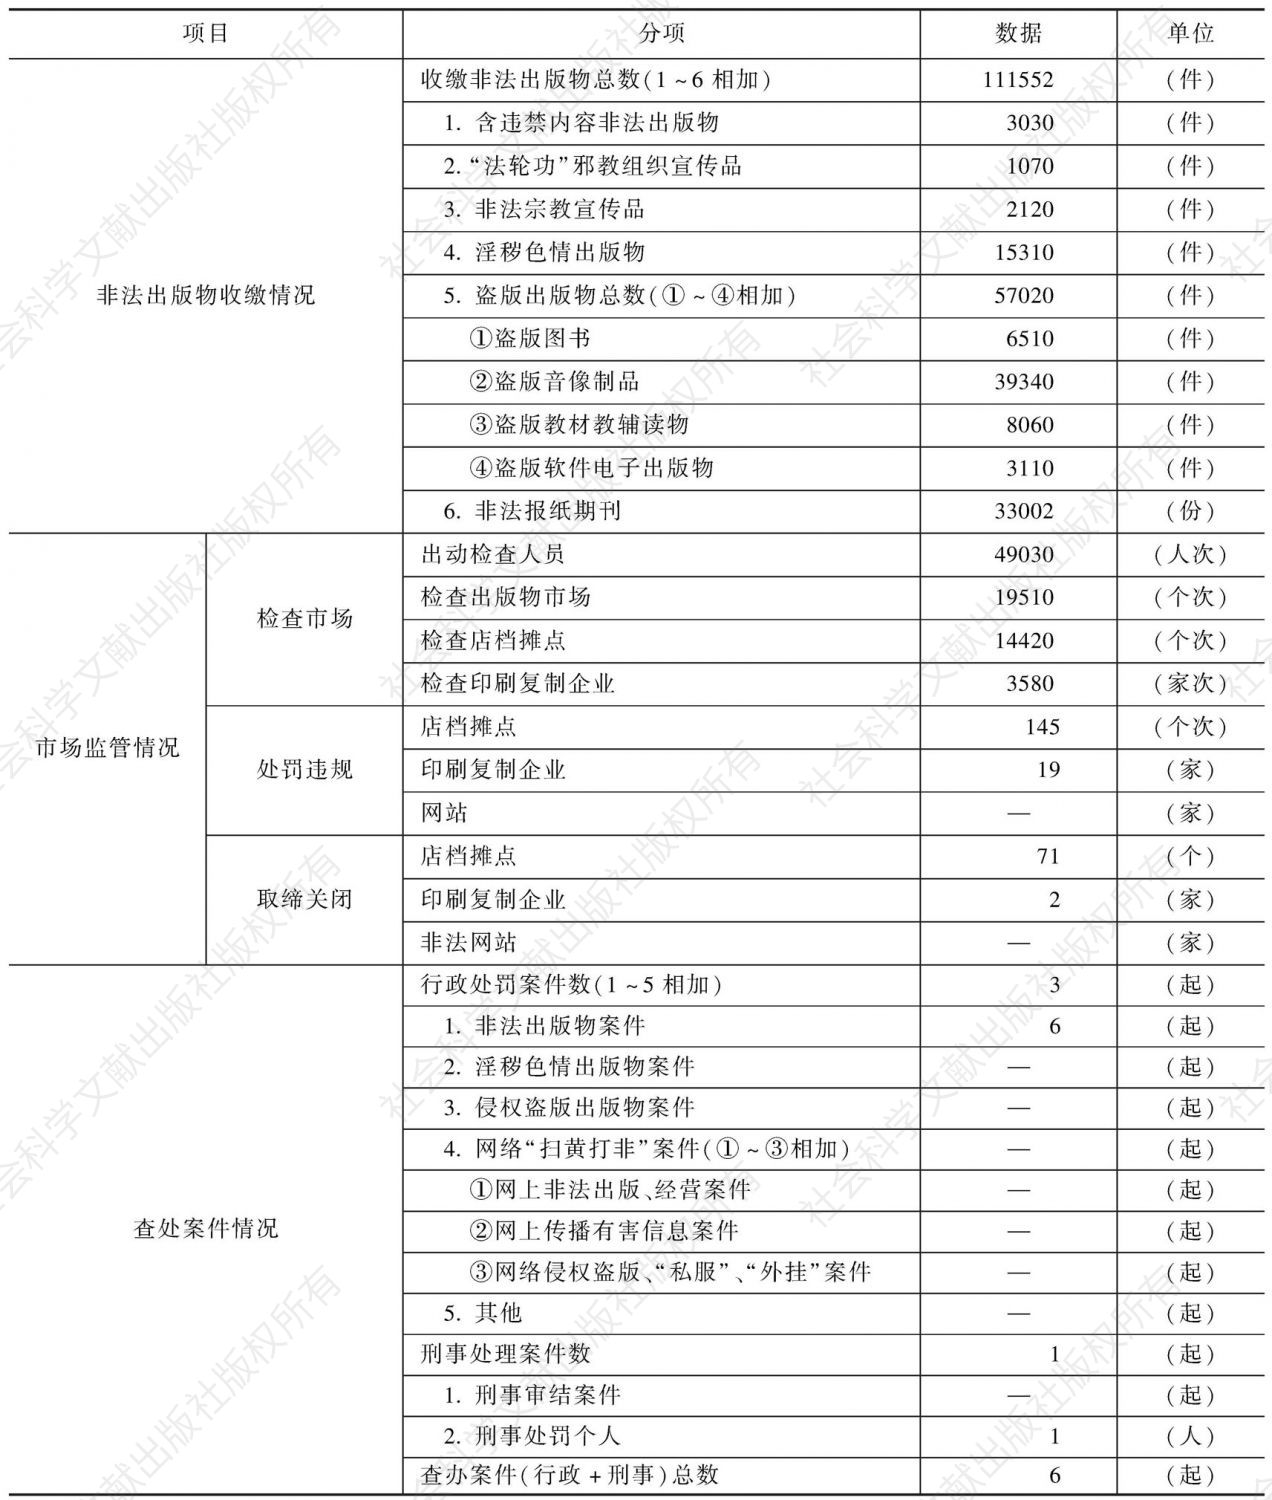 2010年青海省“扫黄打非”工作成果统计表